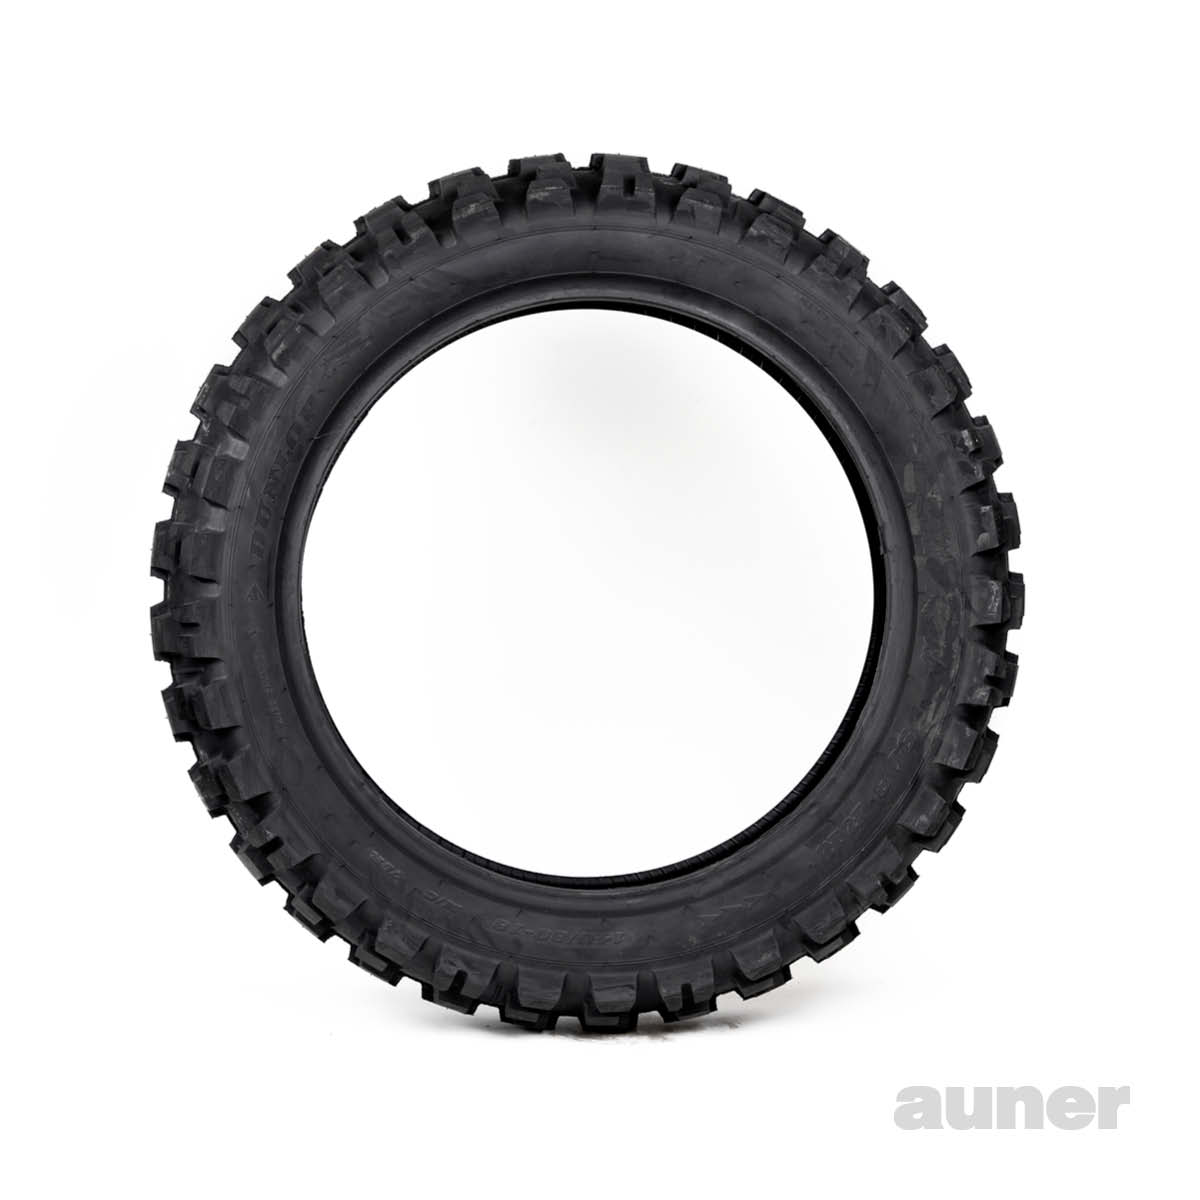 Dunlop Reifen Auner kaufen online - RR bei D908